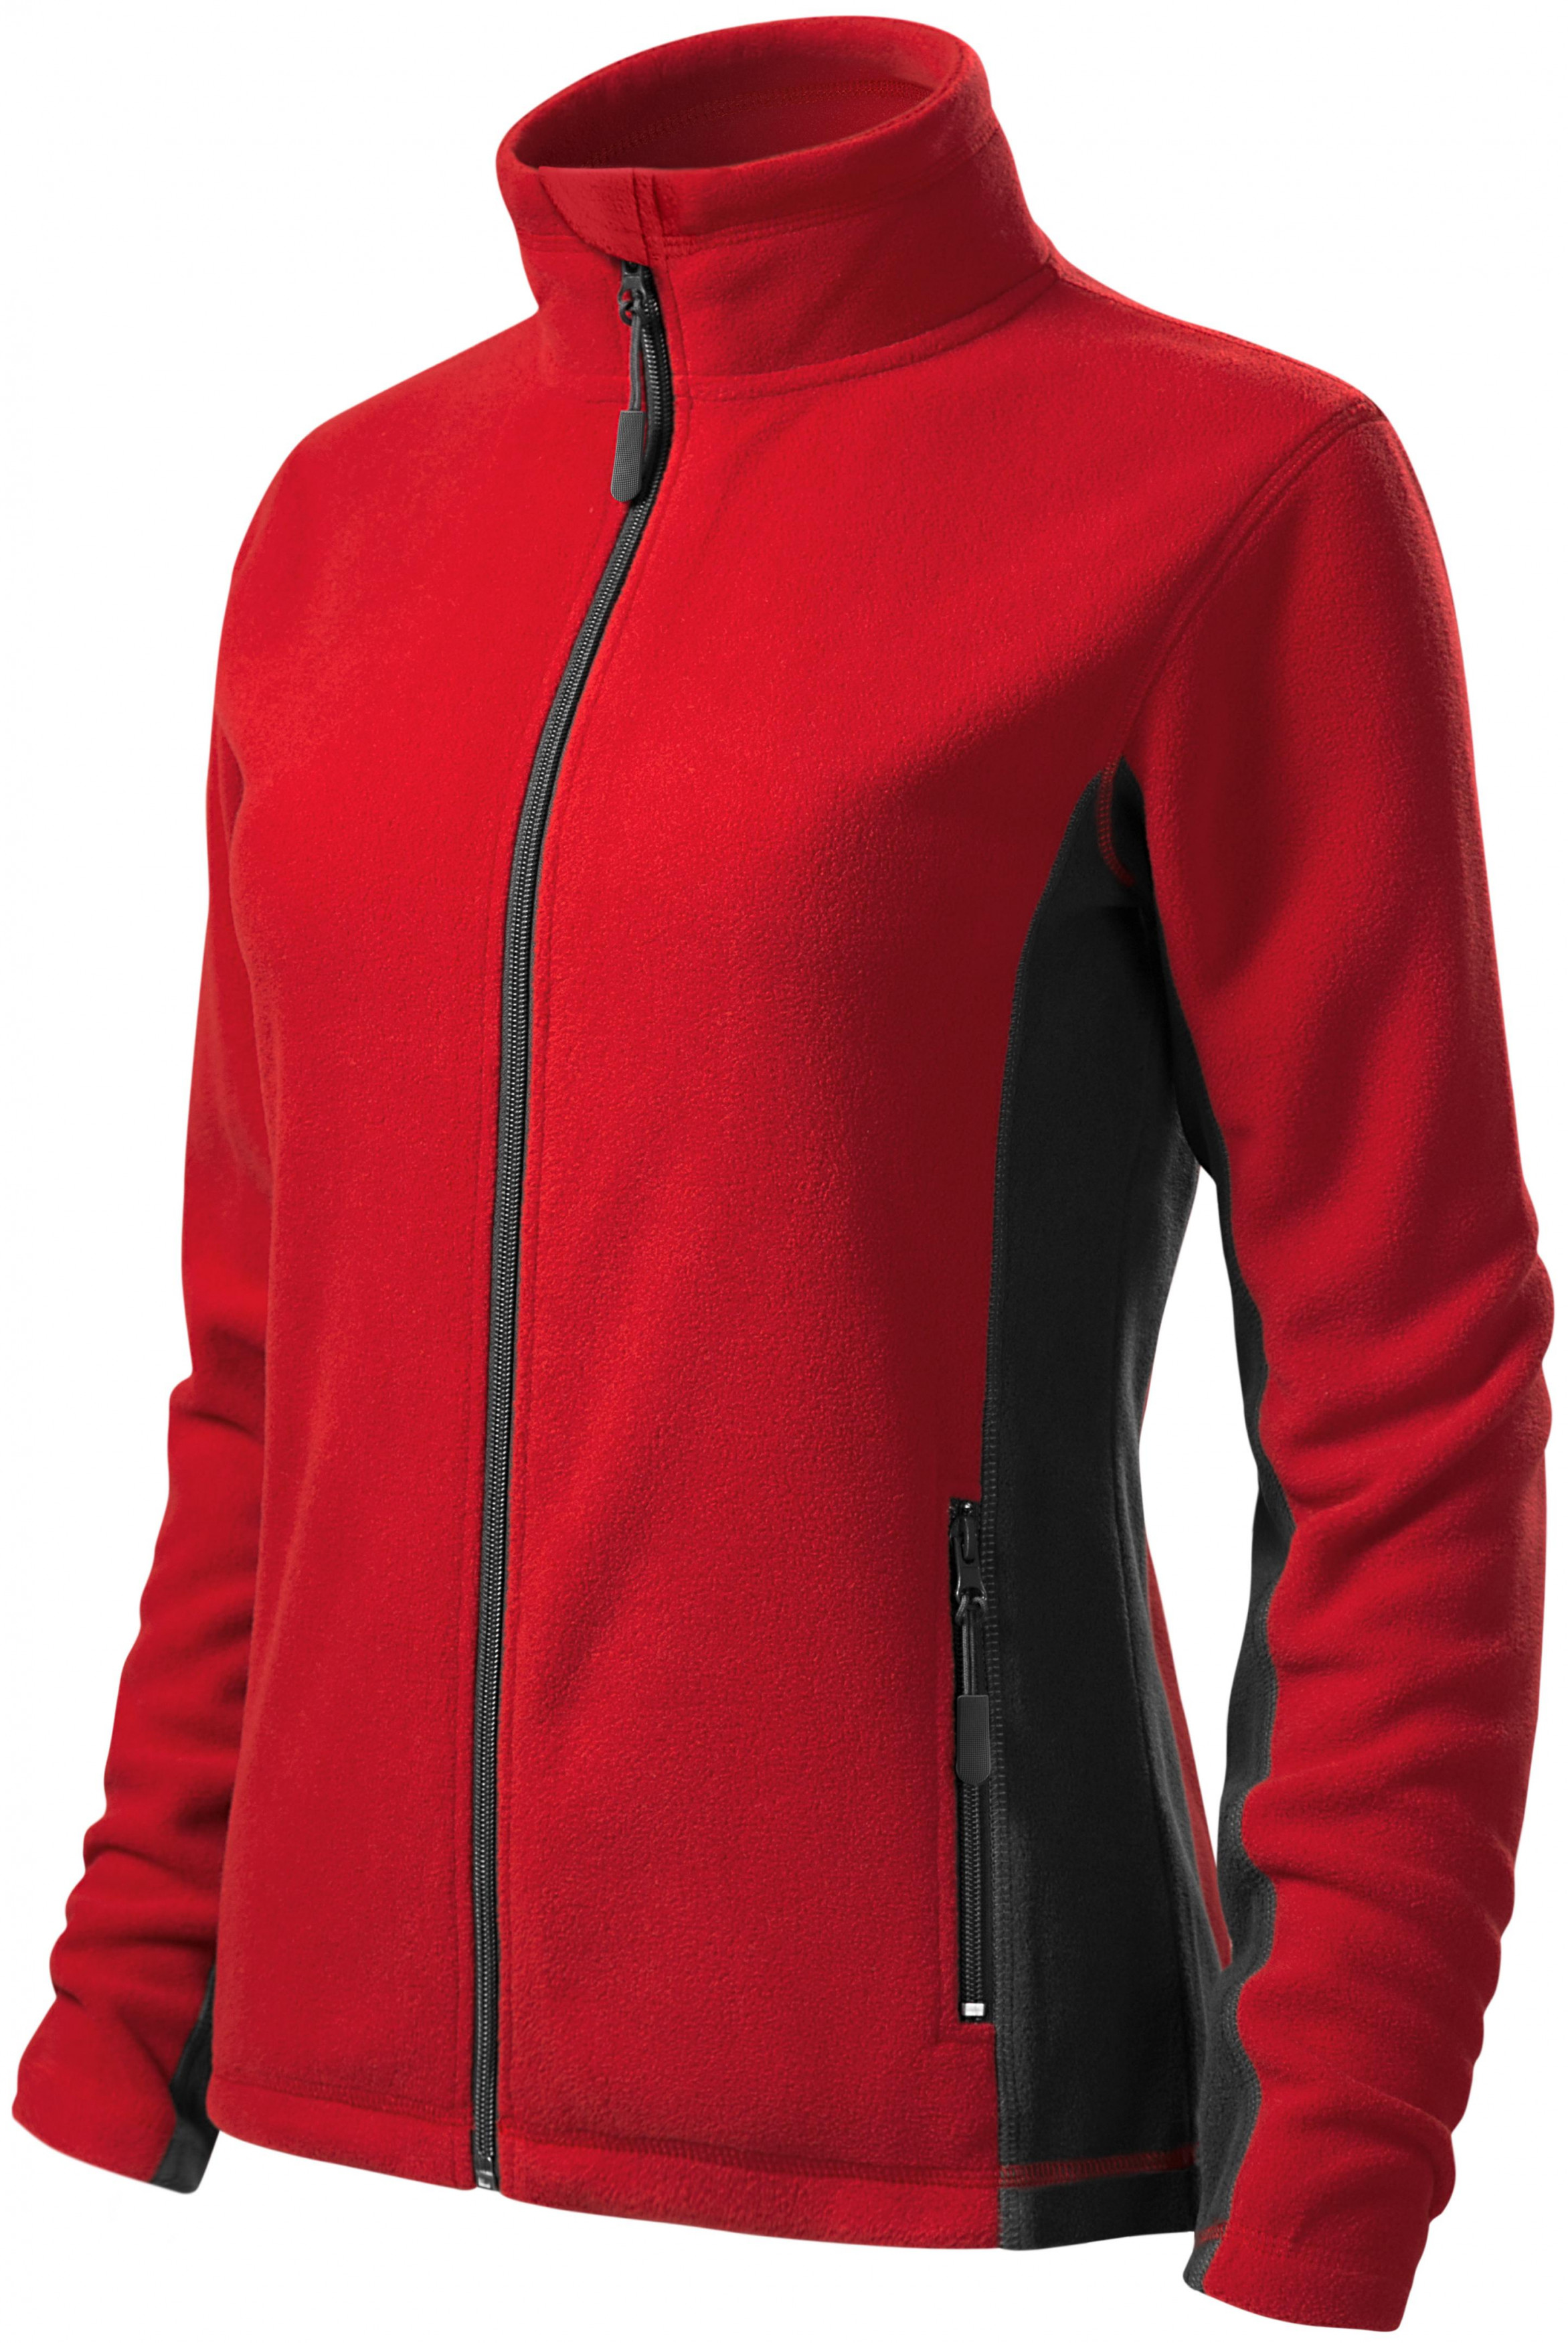 Dámska fleecová bunda kontrastná, červená, 3XL